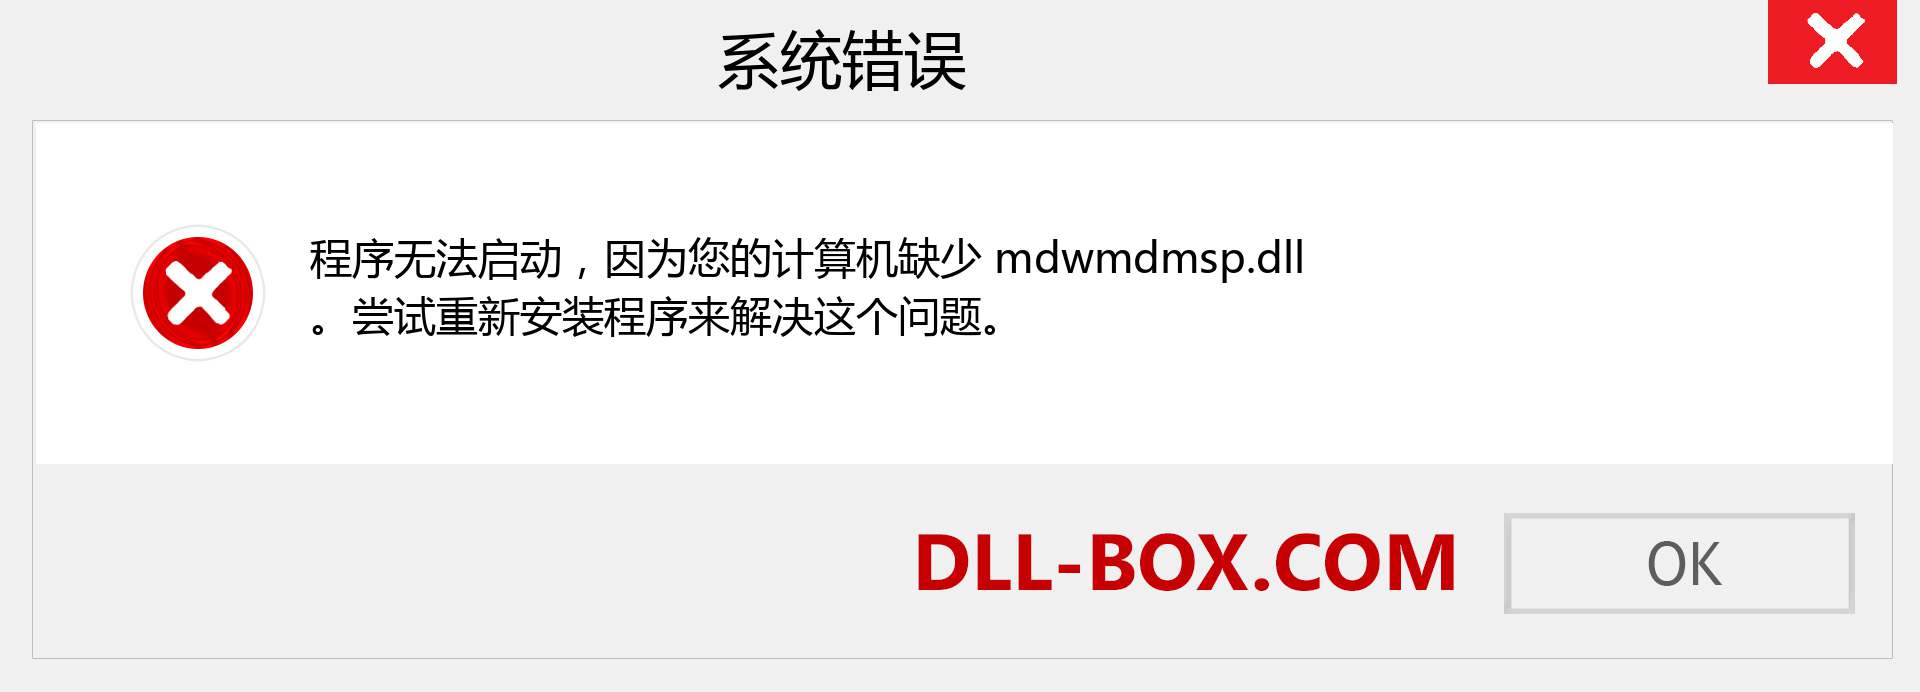 mdwmdmsp.dll 文件丢失？。 适用于 Windows 7、8、10 的下载 - 修复 Windows、照片、图像上的 mdwmdmsp dll 丢失错误